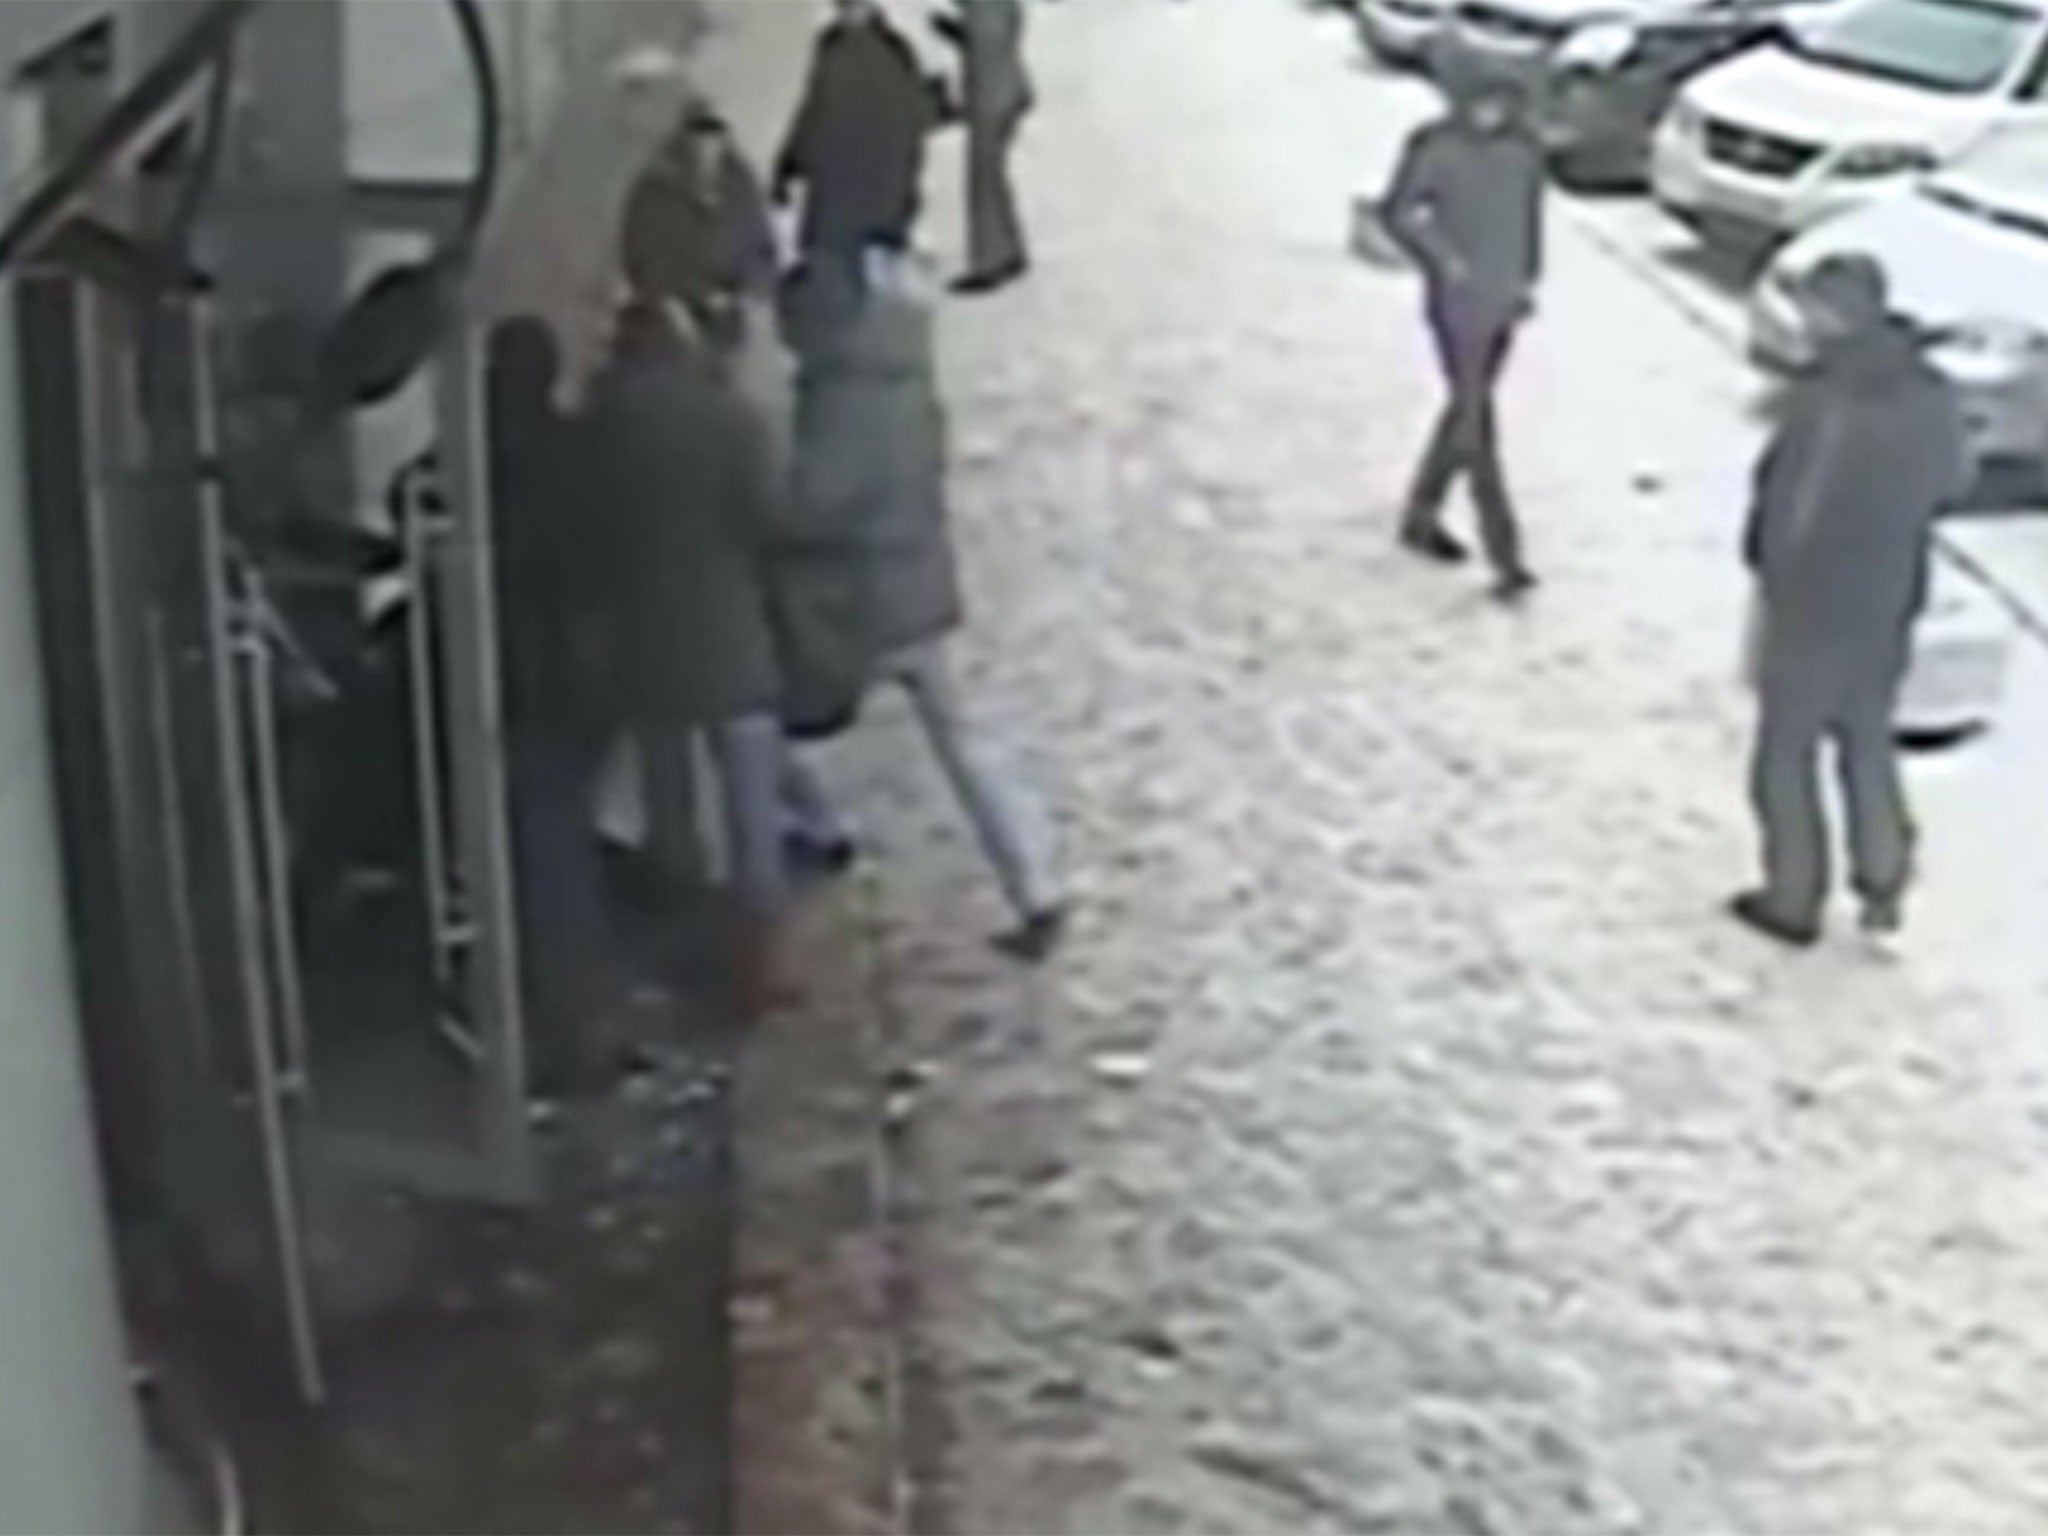 Suspected criminal in Russia runs into glass door.